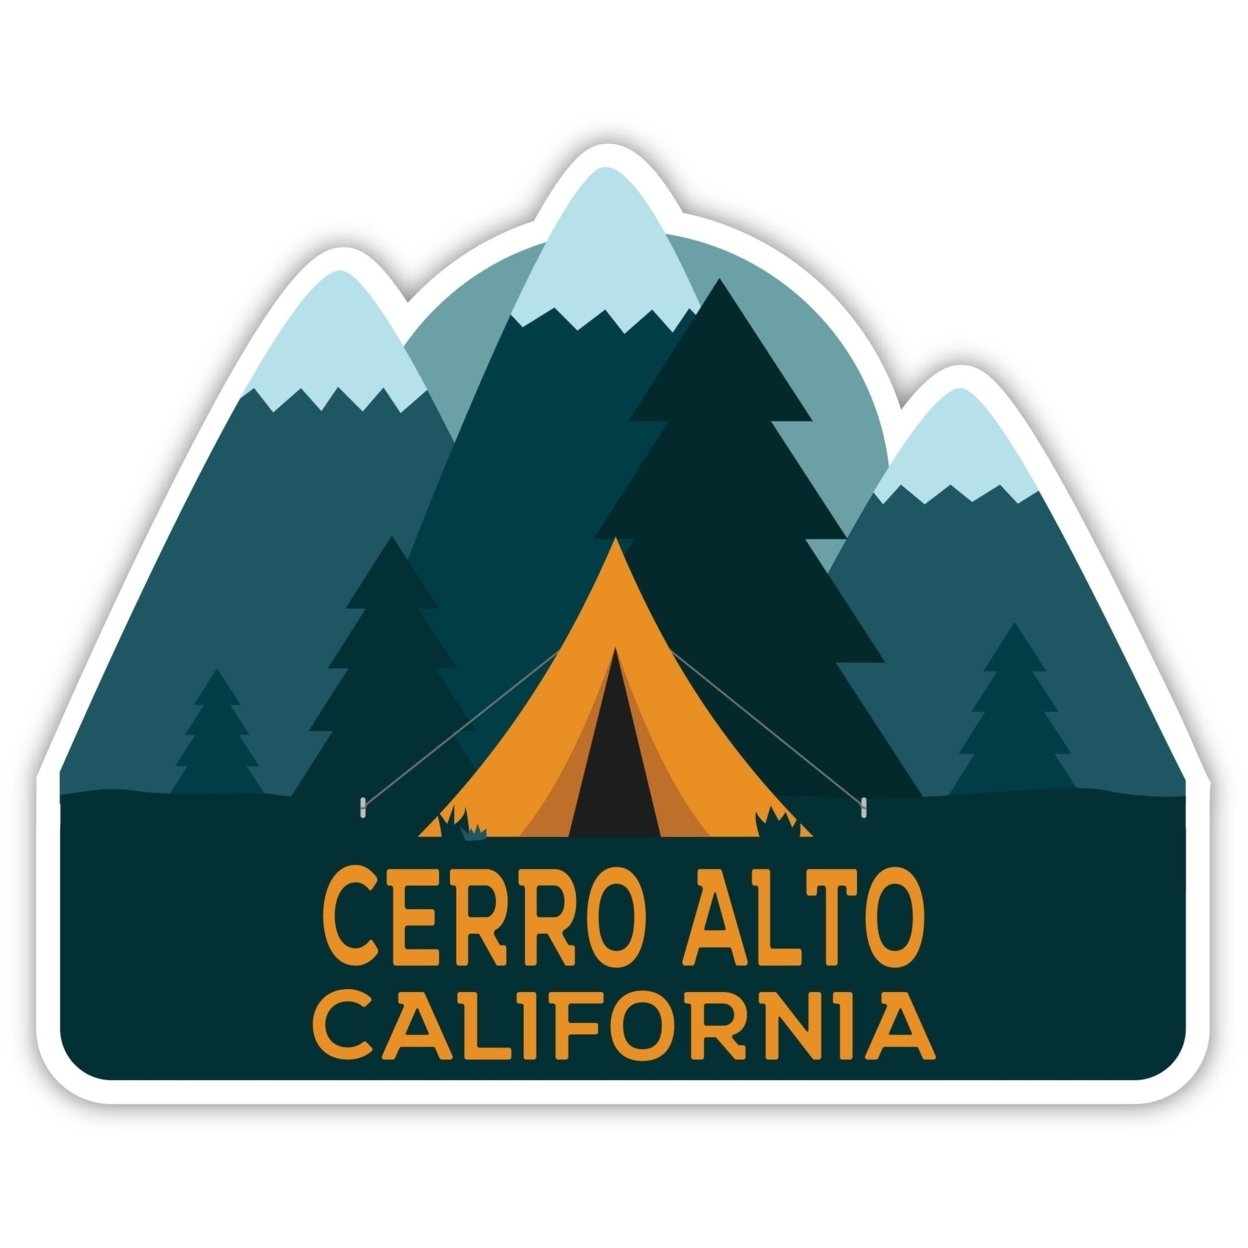 Cerro Alto California Souvenir Decorative Stickers (Choose Theme And Size) - Single Unit, 6-Inch, Tent